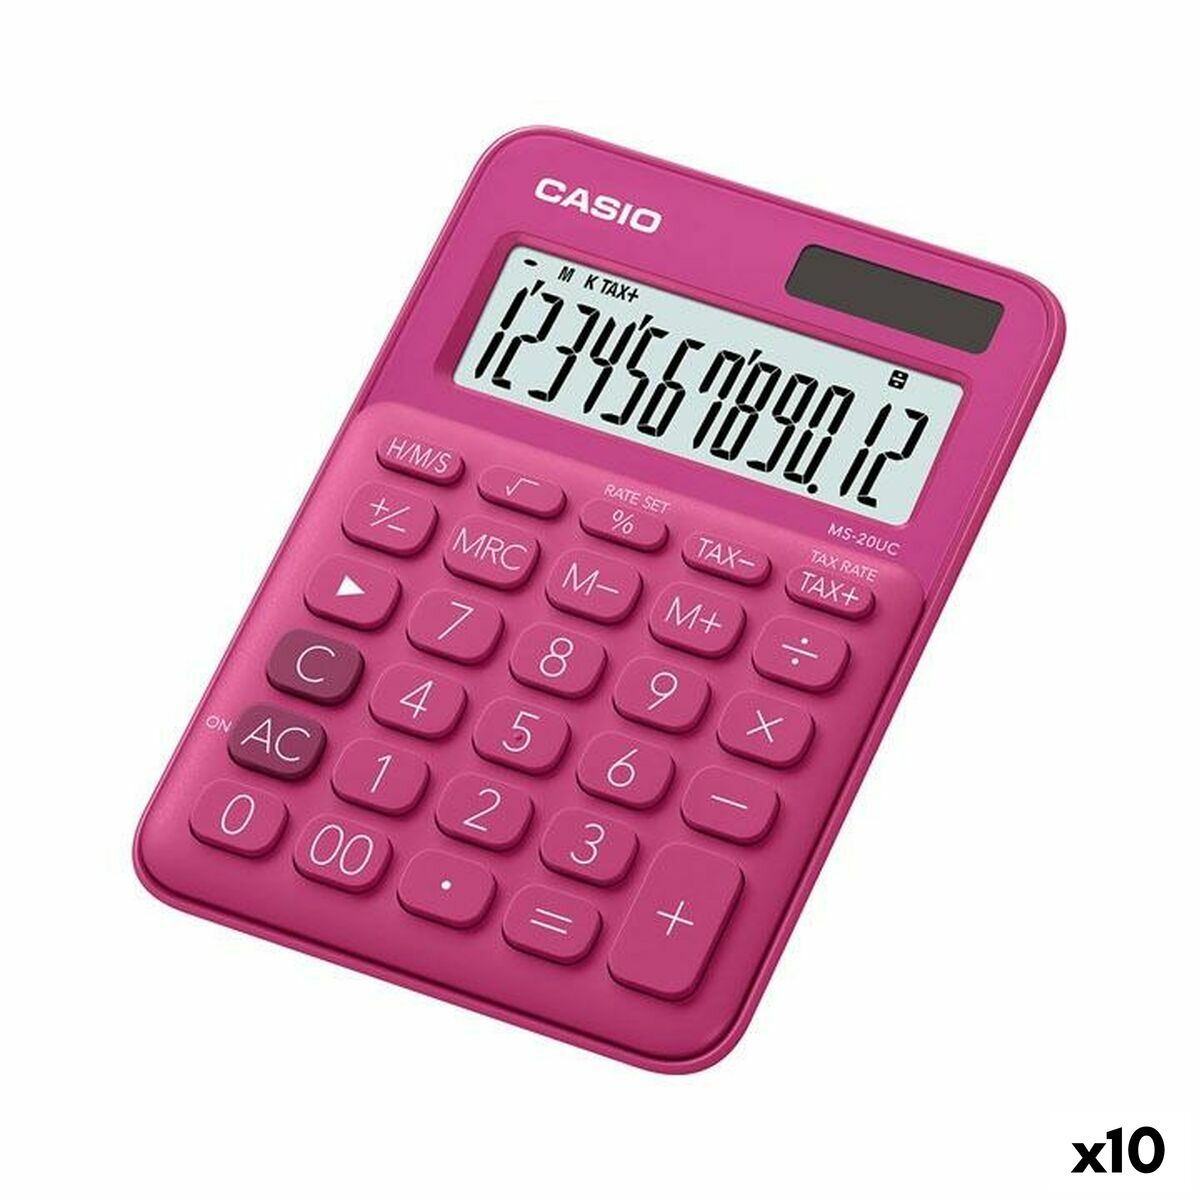 Calculator Casio MS-20UC Fuchsia 2,3 x 10,5 x 14,95 cm (10Units)